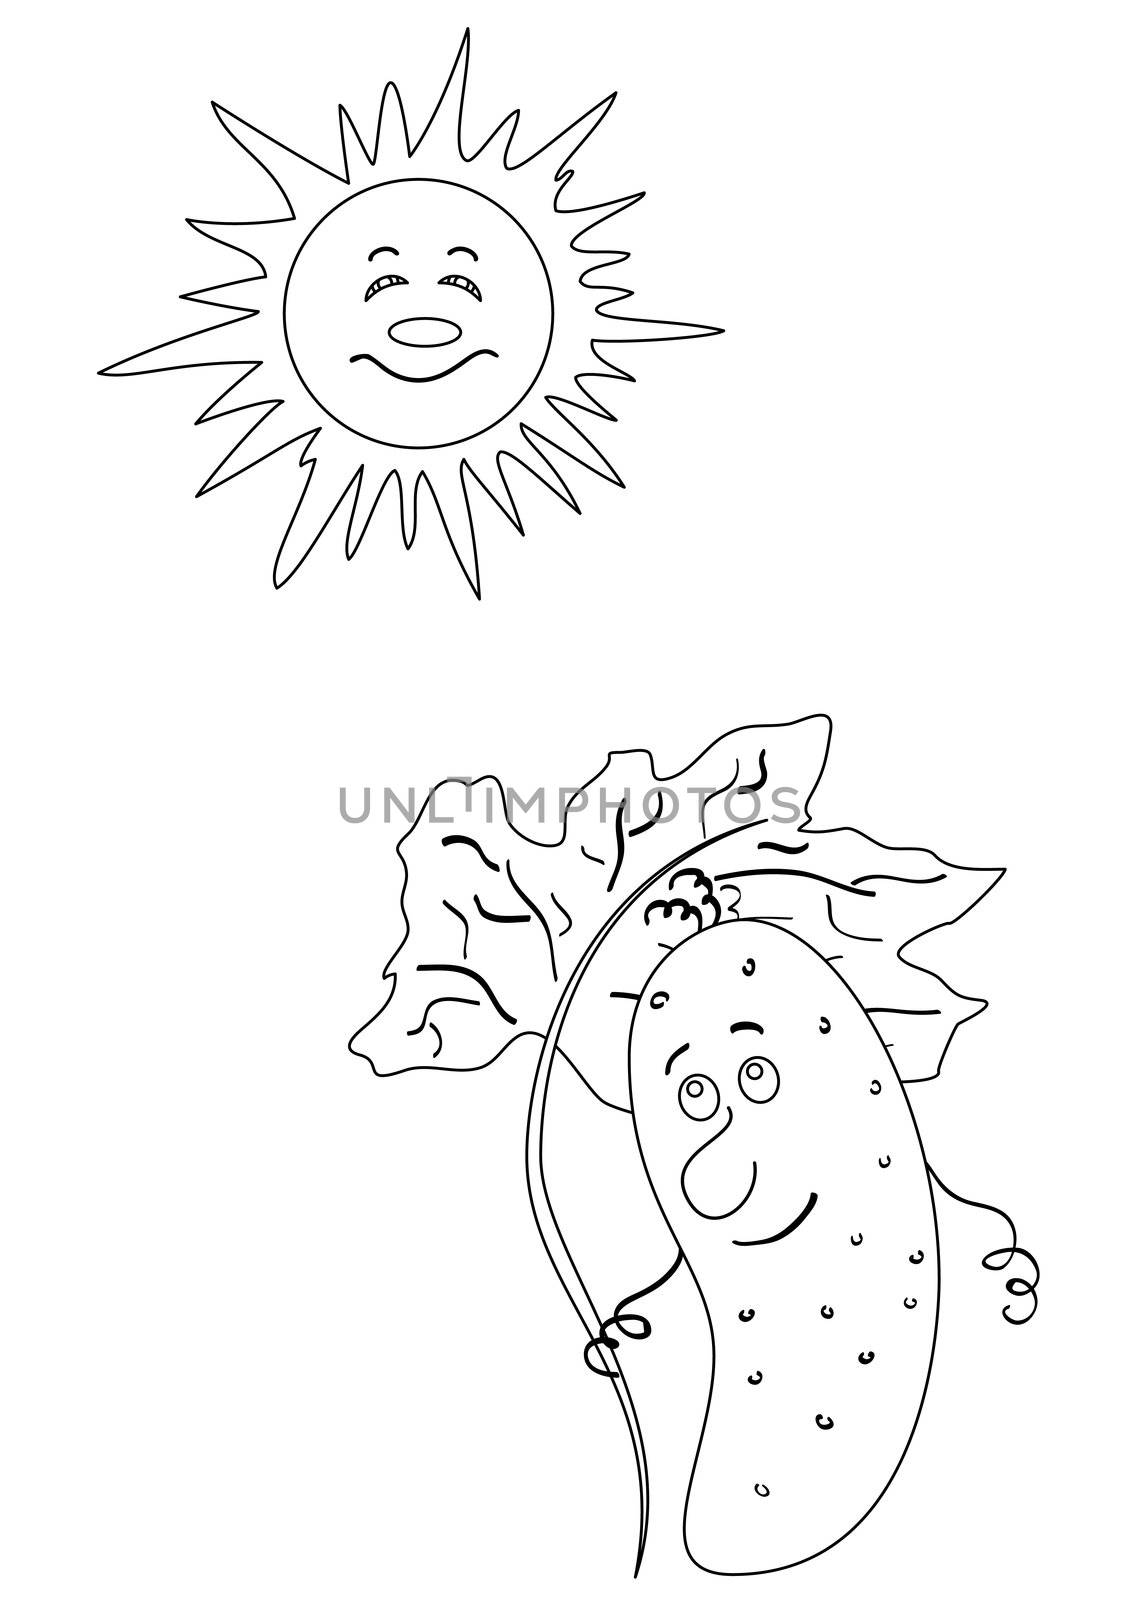 Summer cartoon, contour, cucumber hiding under an umbrella from the sun